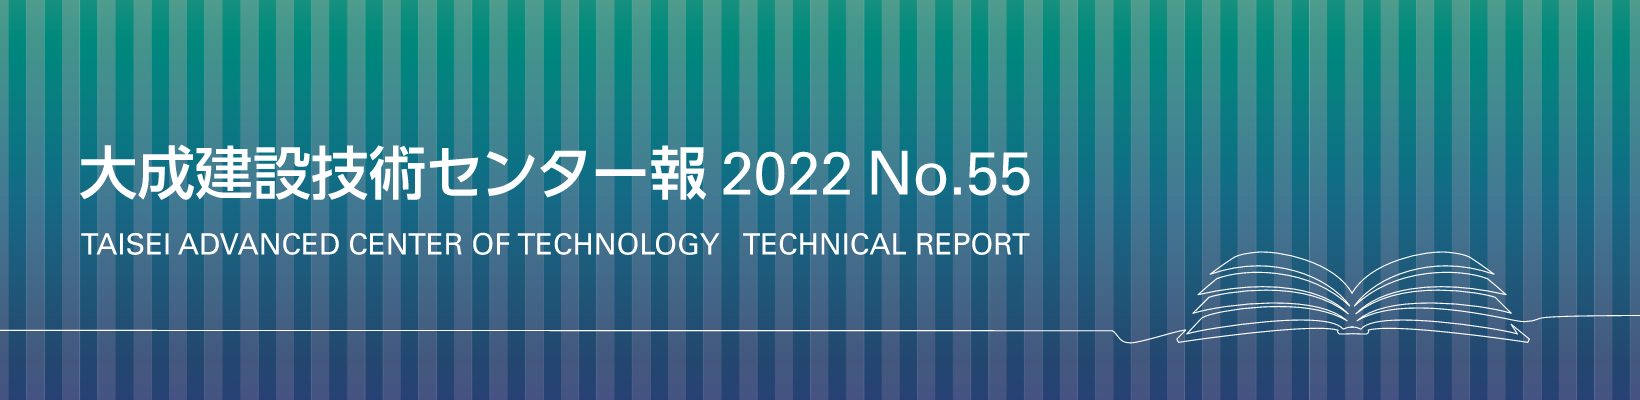 大成建設技術センター報 No.55 2022 TAISEI ADVANCED CENTER OF TECHNOLOGY TECHNICAL REPORT